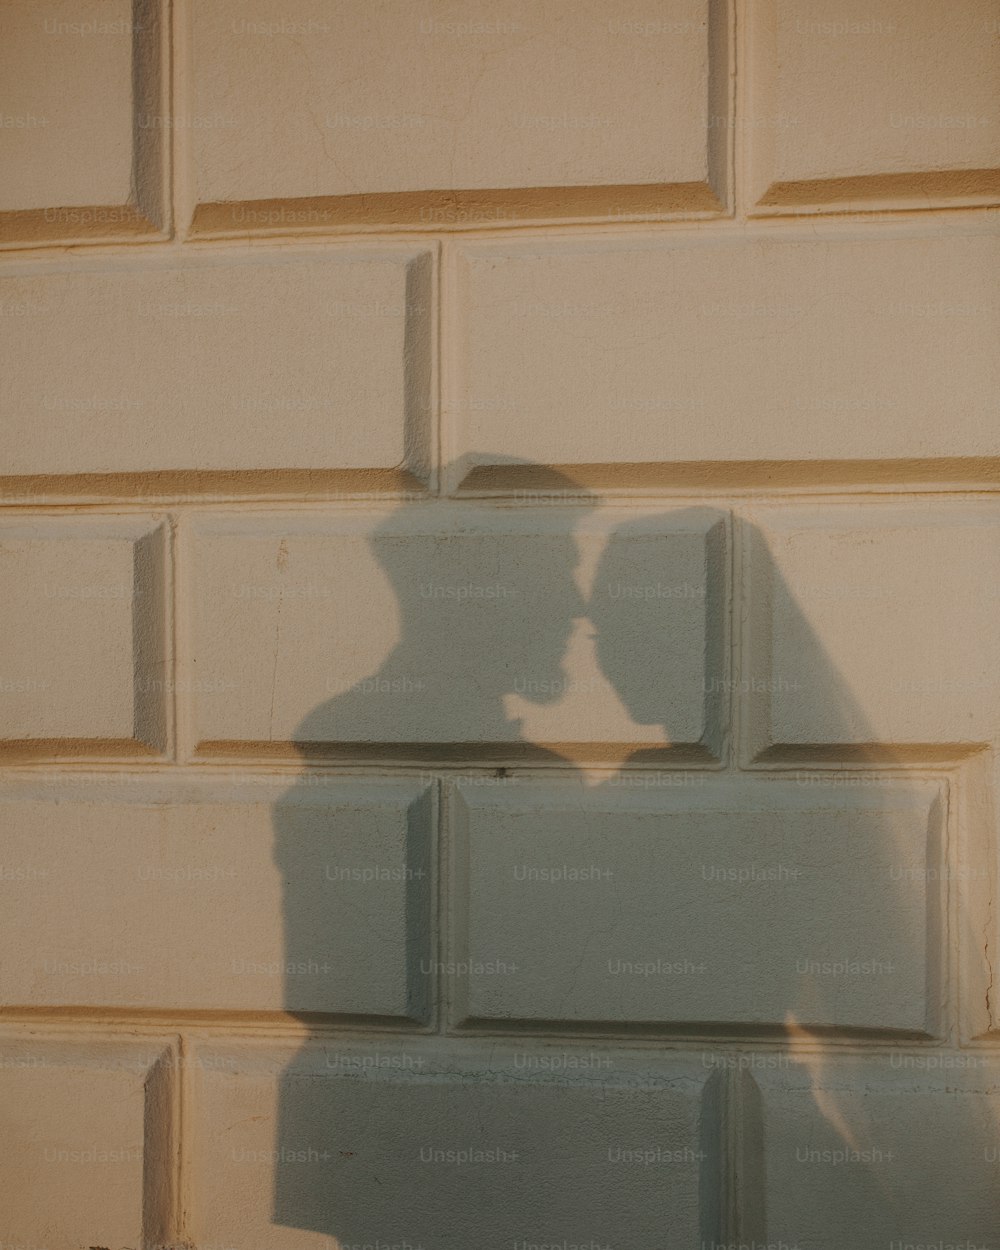 Ein Schatten einer Person auf einer Ziegelmauer